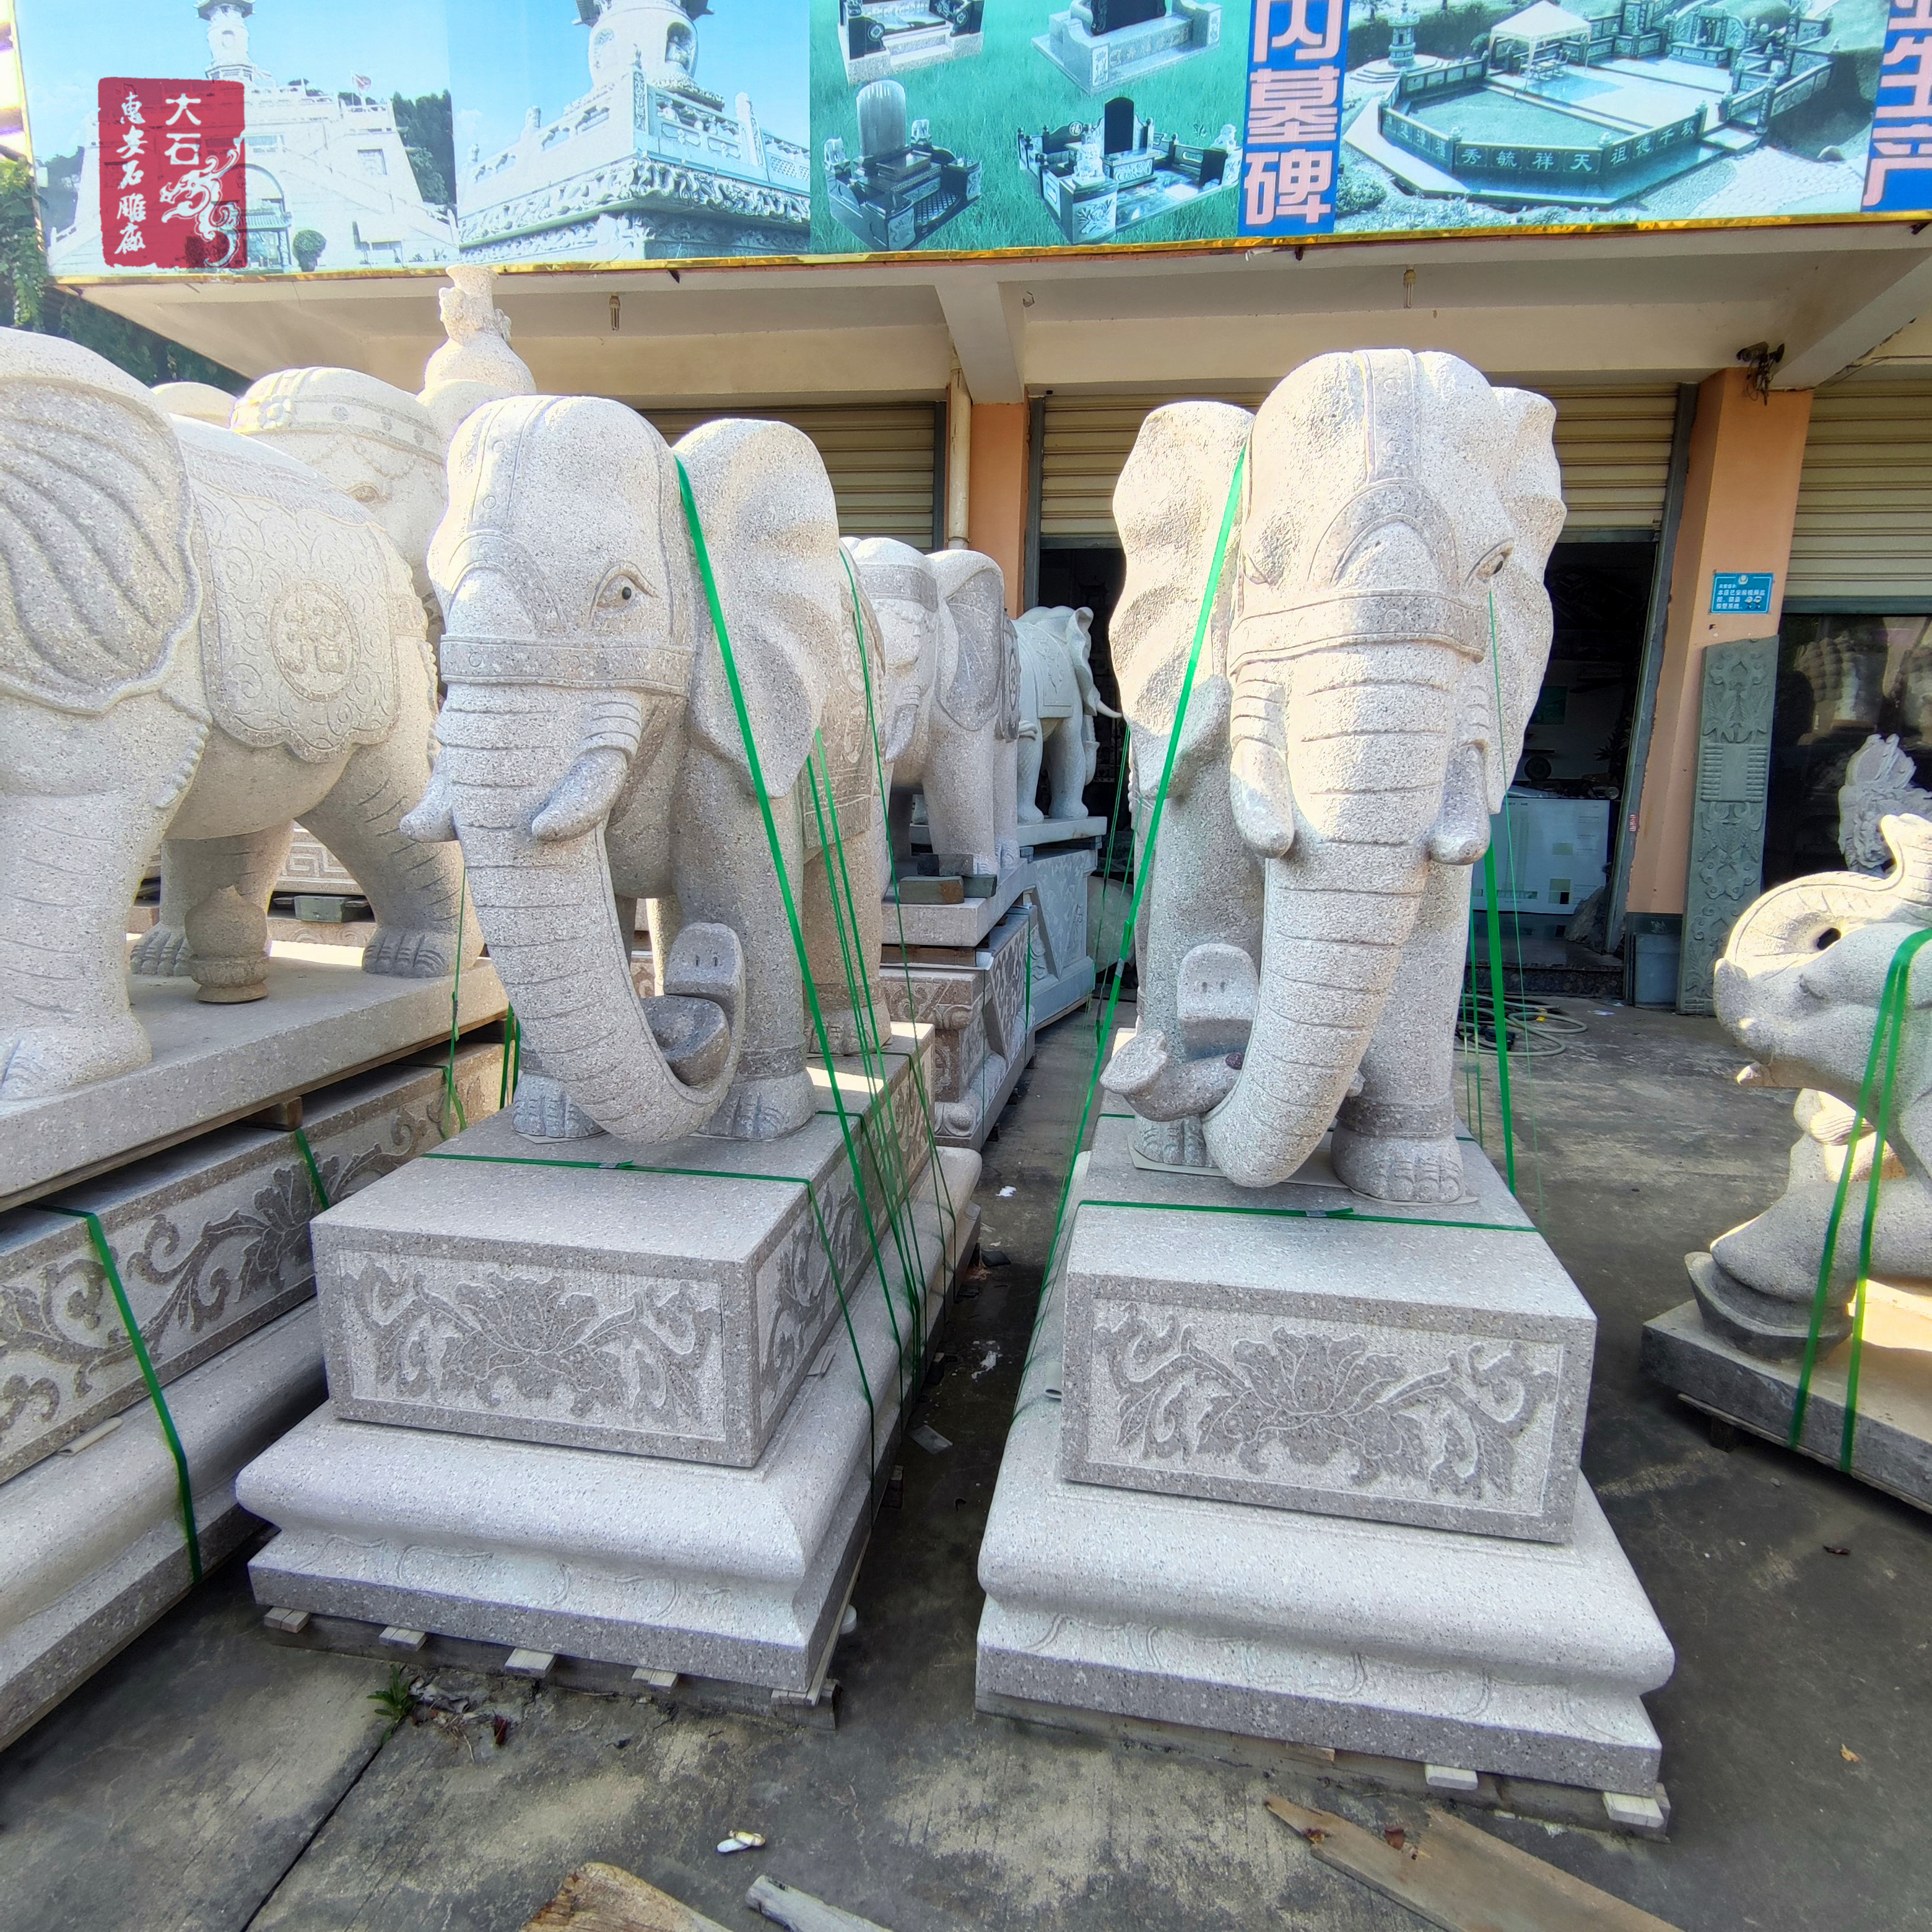  大理石商场门口石雕动物  石雕大象 纯手工雕刻